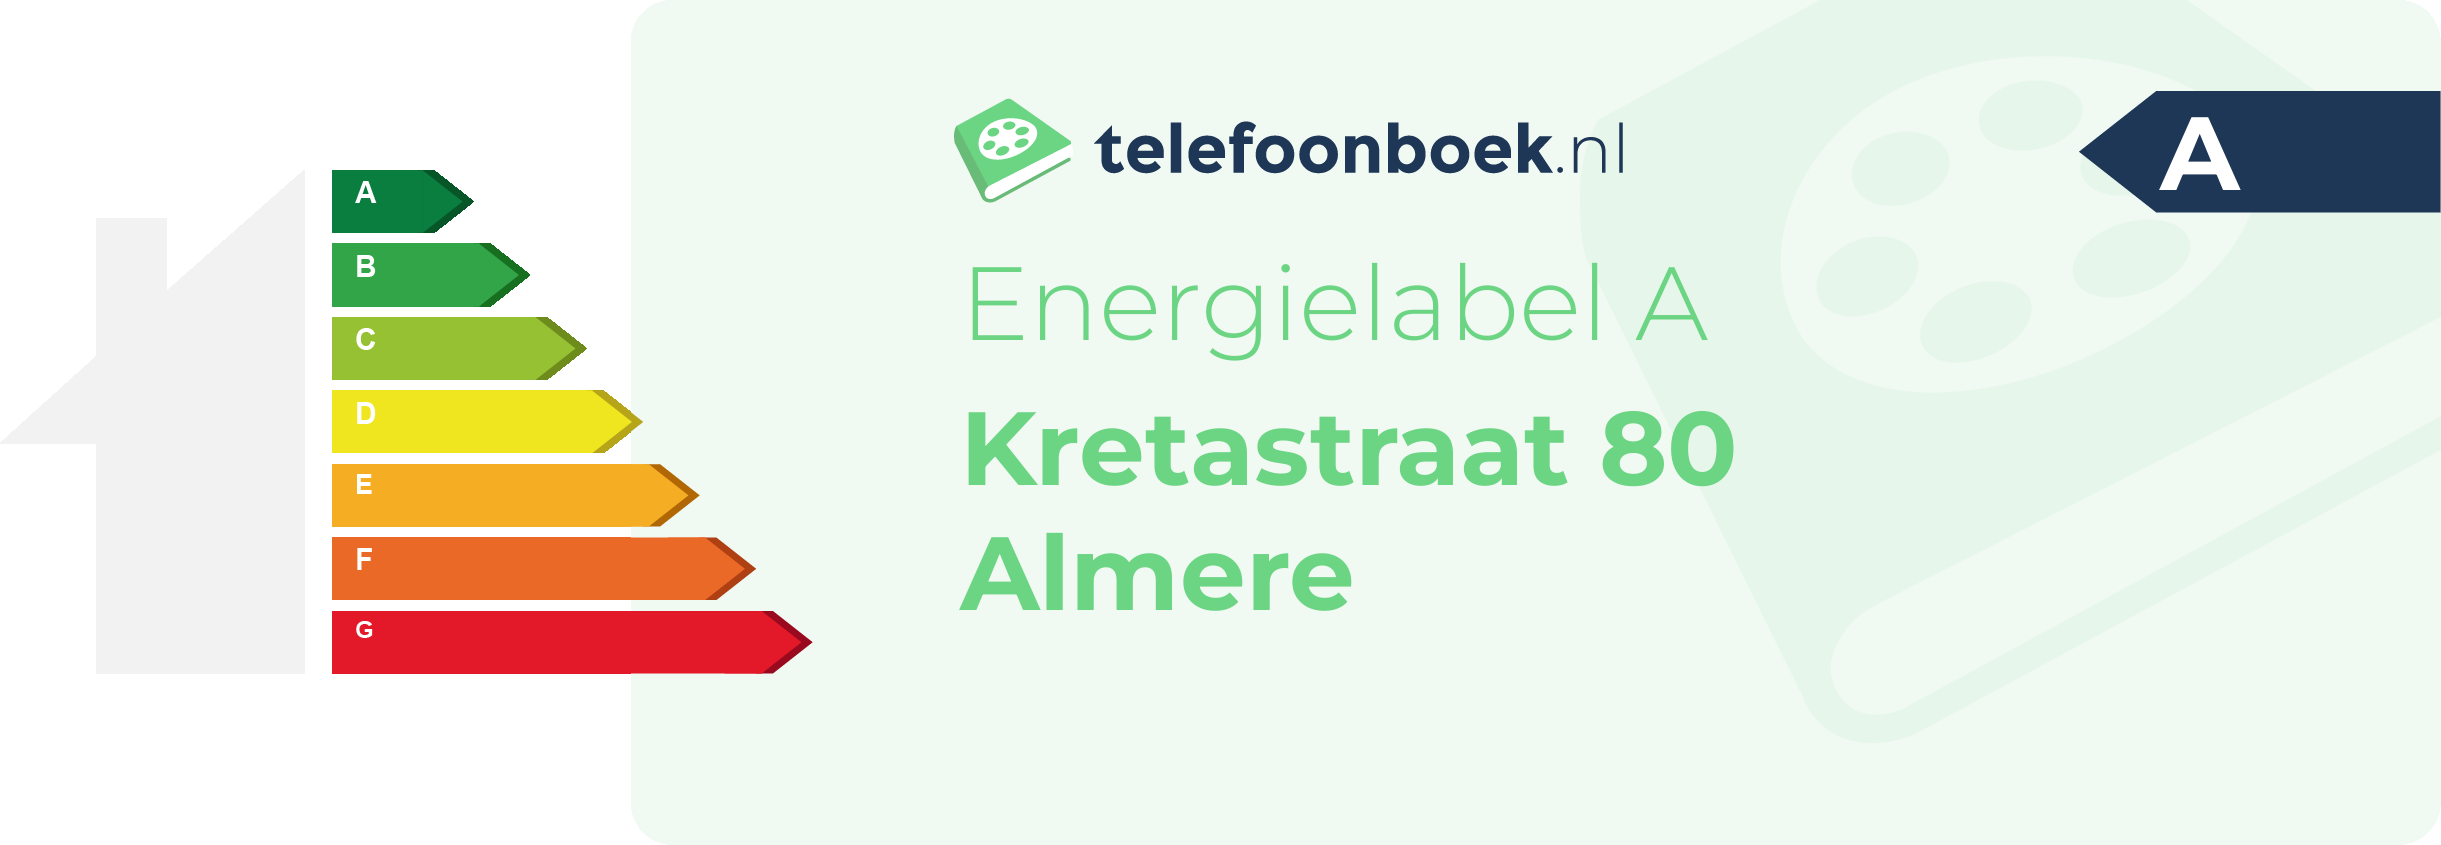 Energielabel Kretastraat 80 Almere